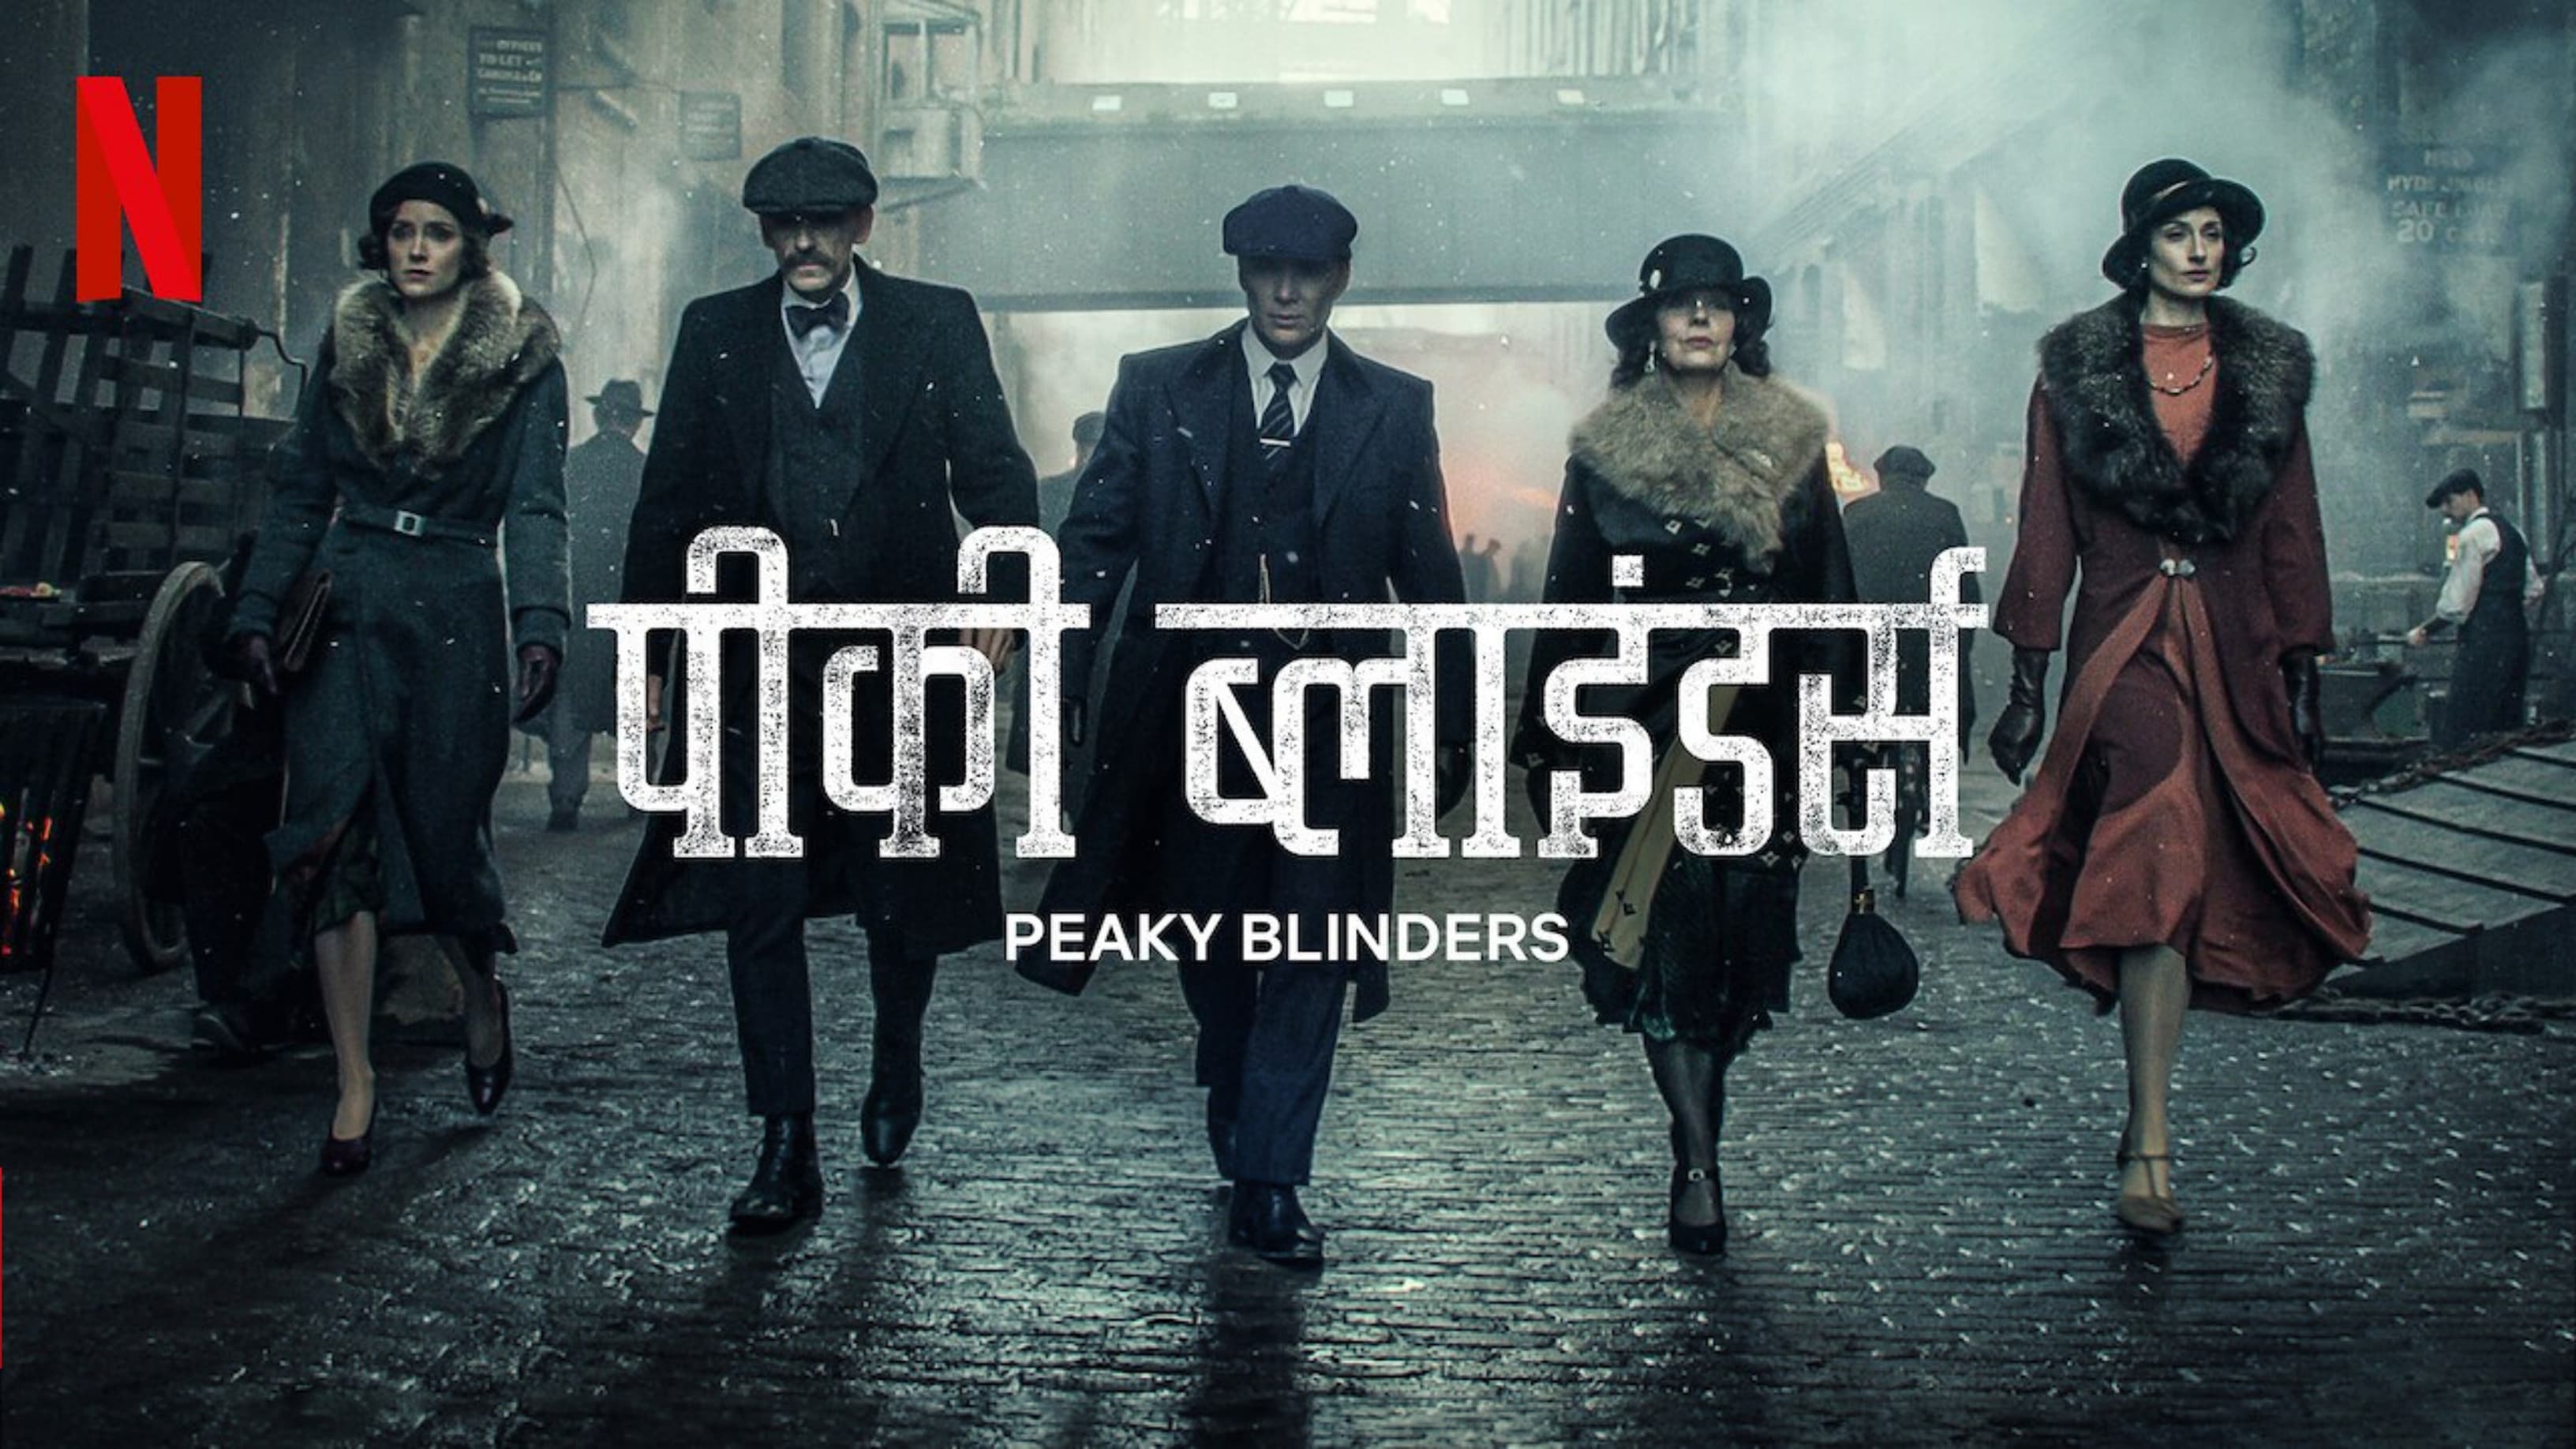 Peaky Blinders - Series 2